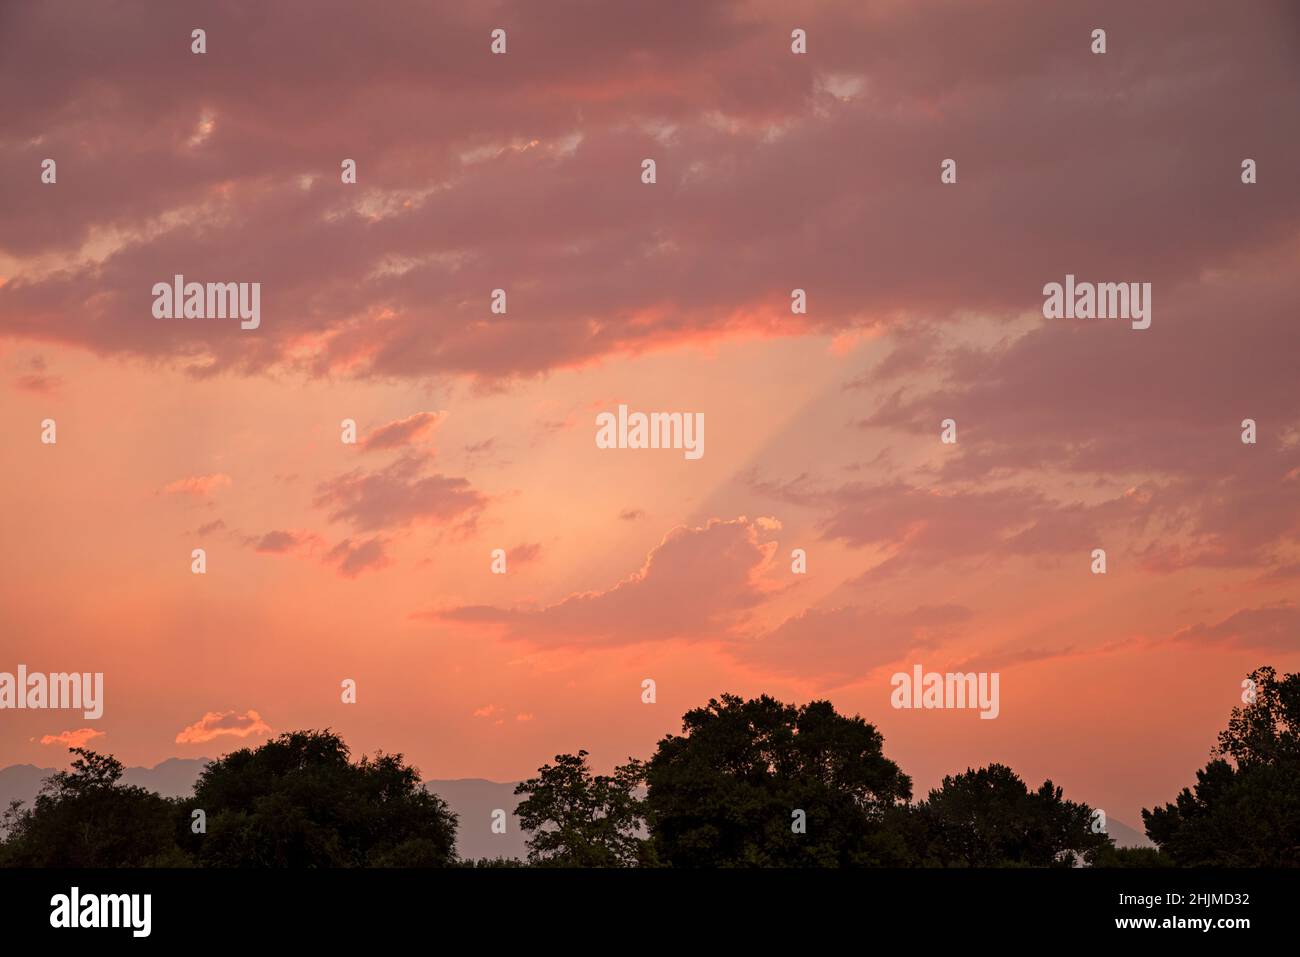 puesta de sol en tonos pastel con nubes y árboles oscuros en primer plano Foto de stock